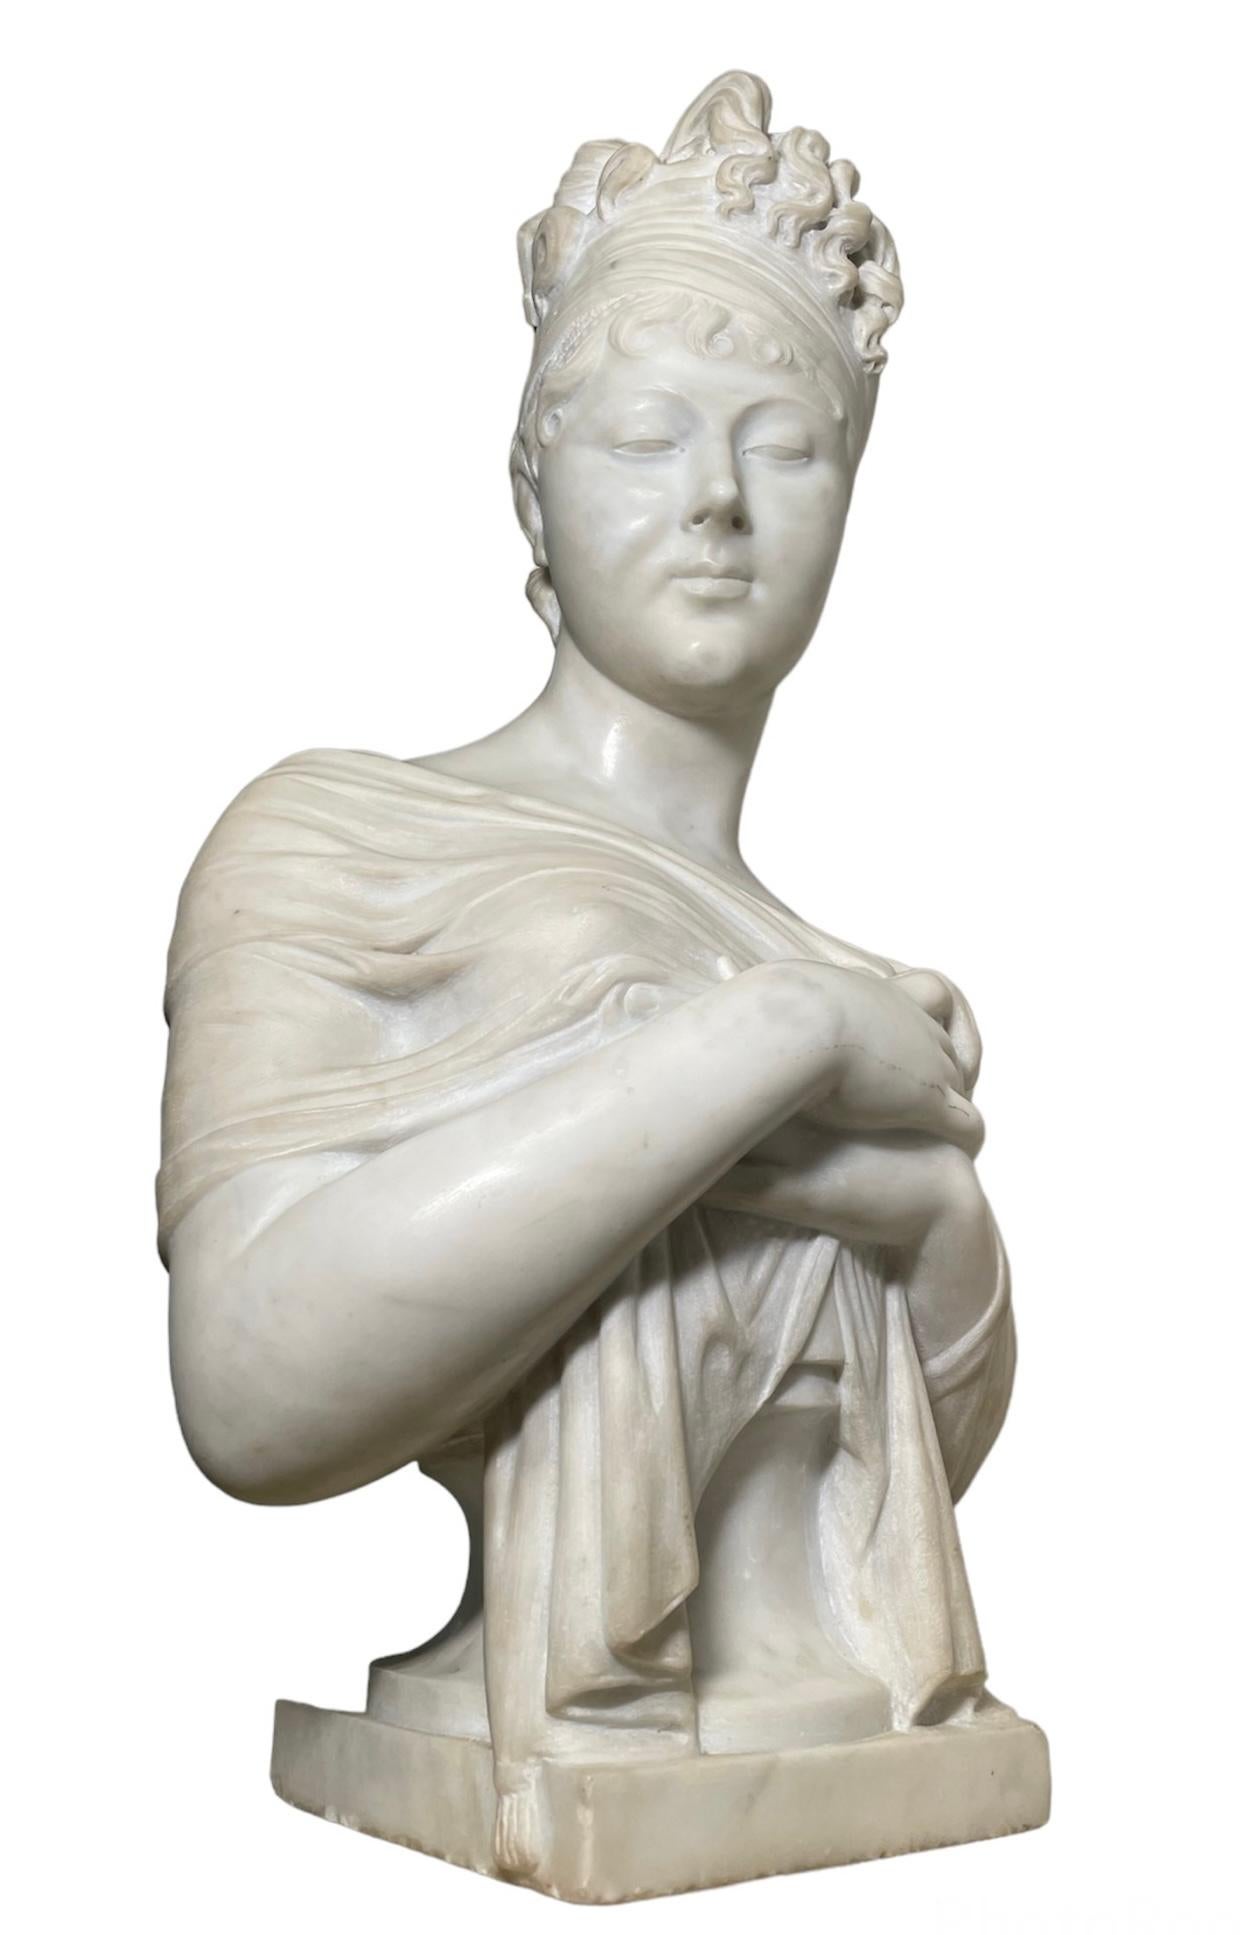 Il s'agit d'un buste en marbre blanc de Madame Récamier d'après une sculpture de Joseph Chinard. On y voit sa tête tournée vers la droite, tandis qu'elle se couvre la poitrine d'un châle semi-transparent, probablement en soie, mais exposant un de